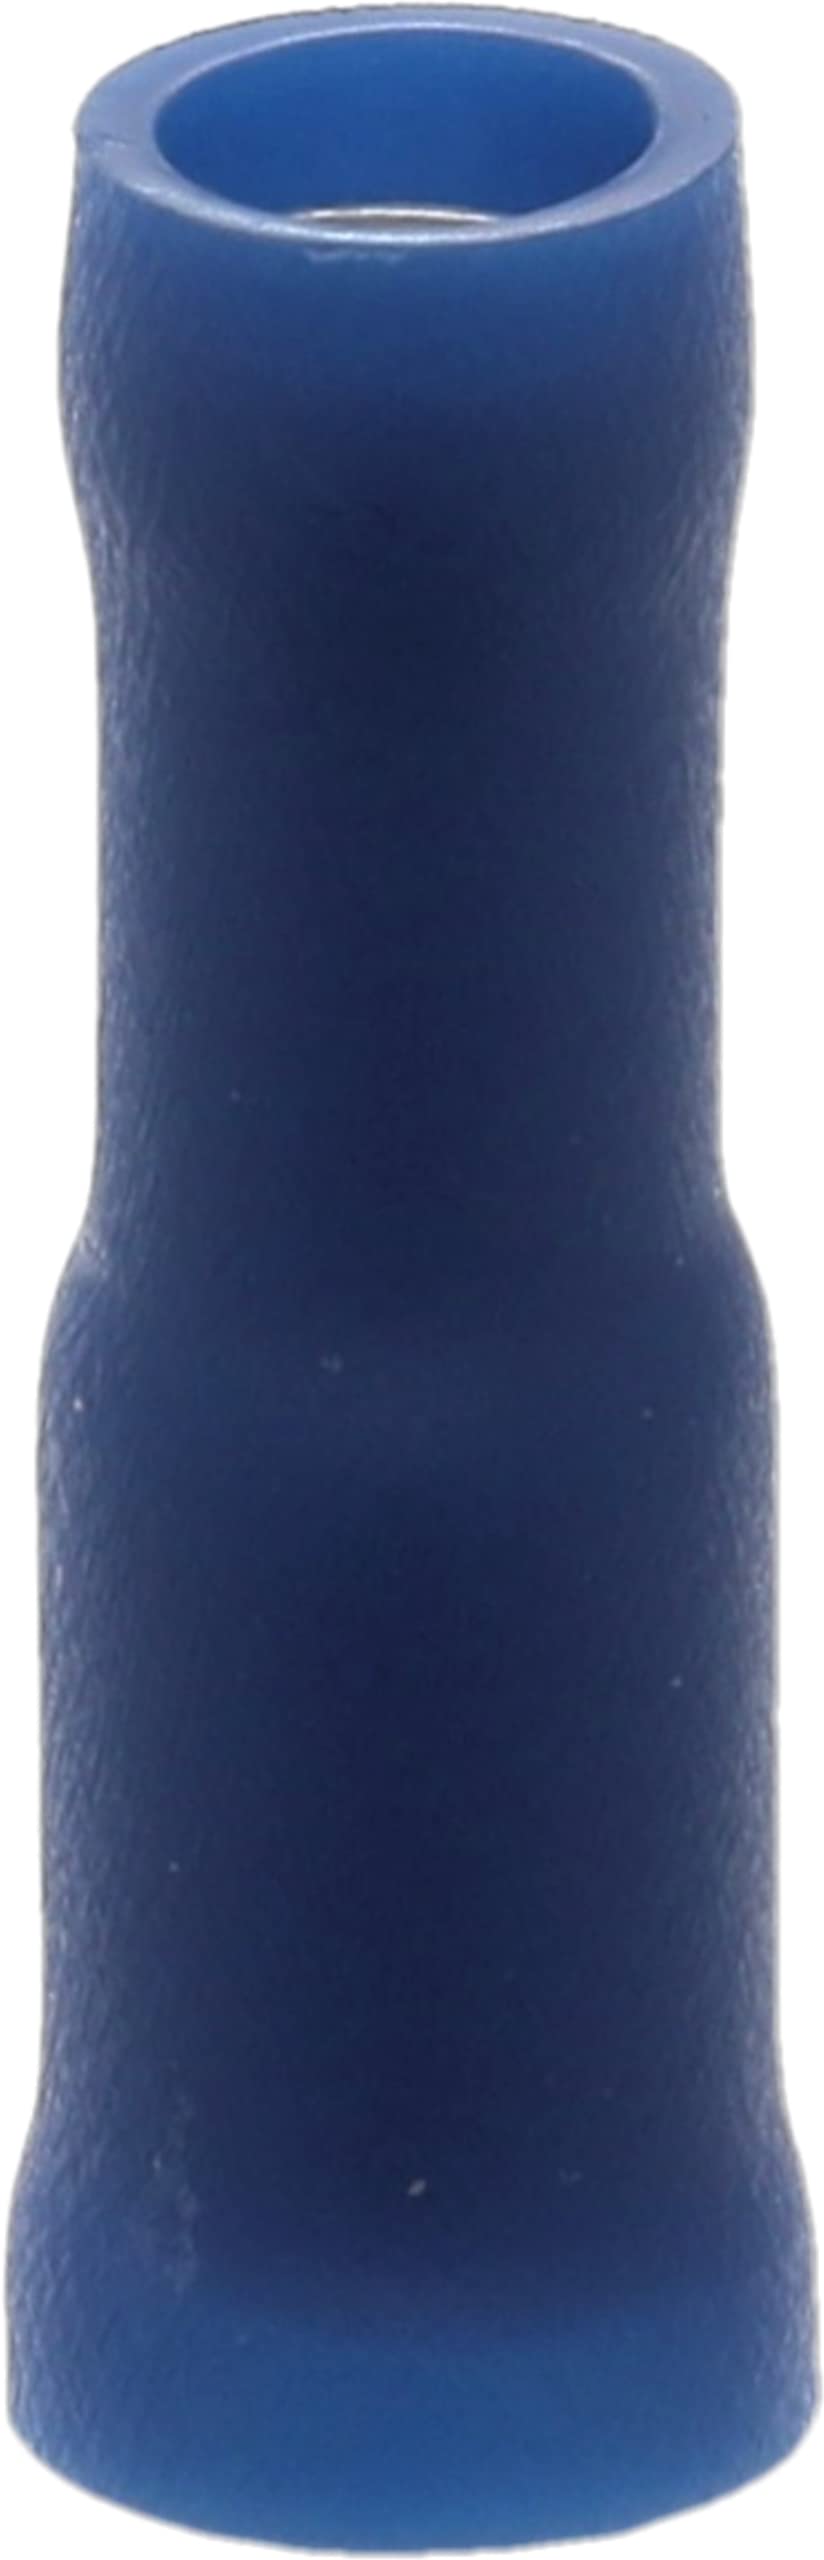 Restagraf 226920 Kabelschuh, Blau, 4 mm von Restagraf